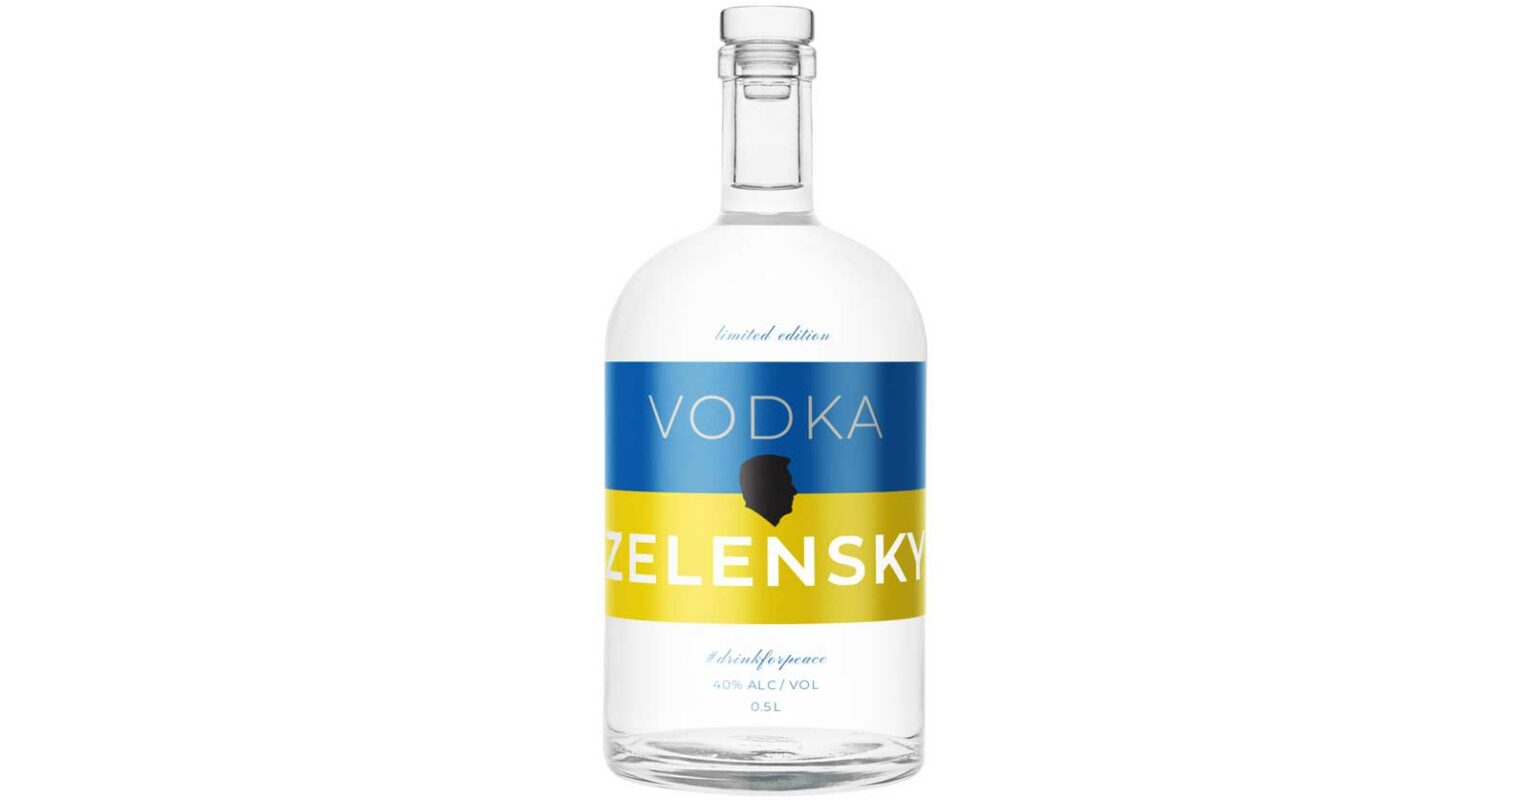 „Vodka Zelensky” – drink responsibly and help